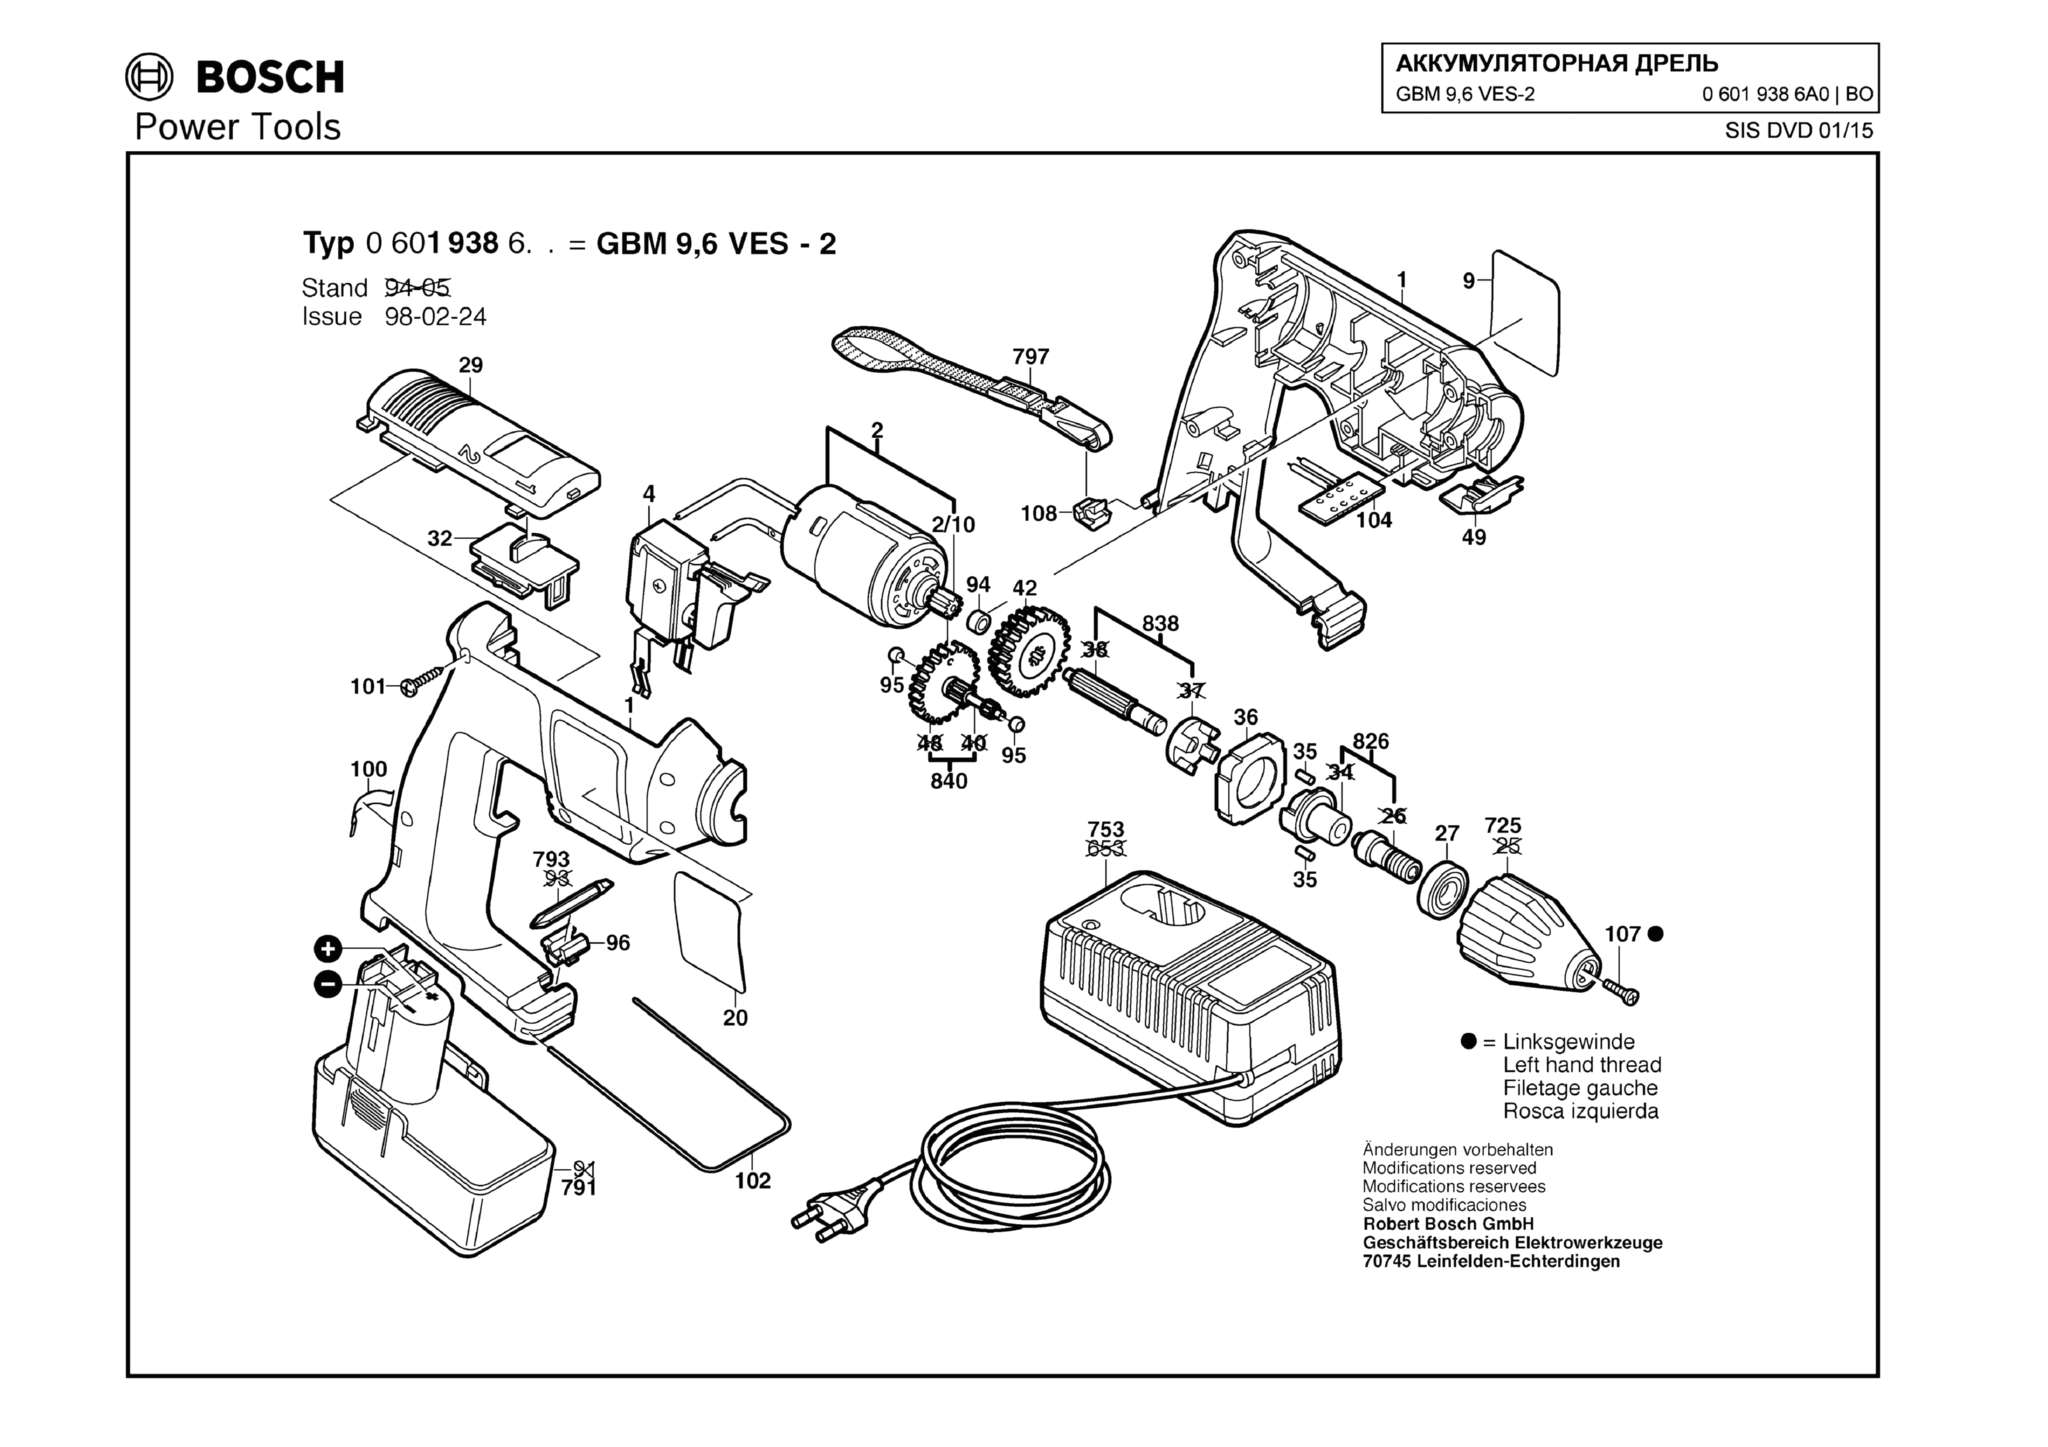 Запчасти, схема и деталировка Bosch GBM 9,6 VES-2 (ТИП 06019386A0)